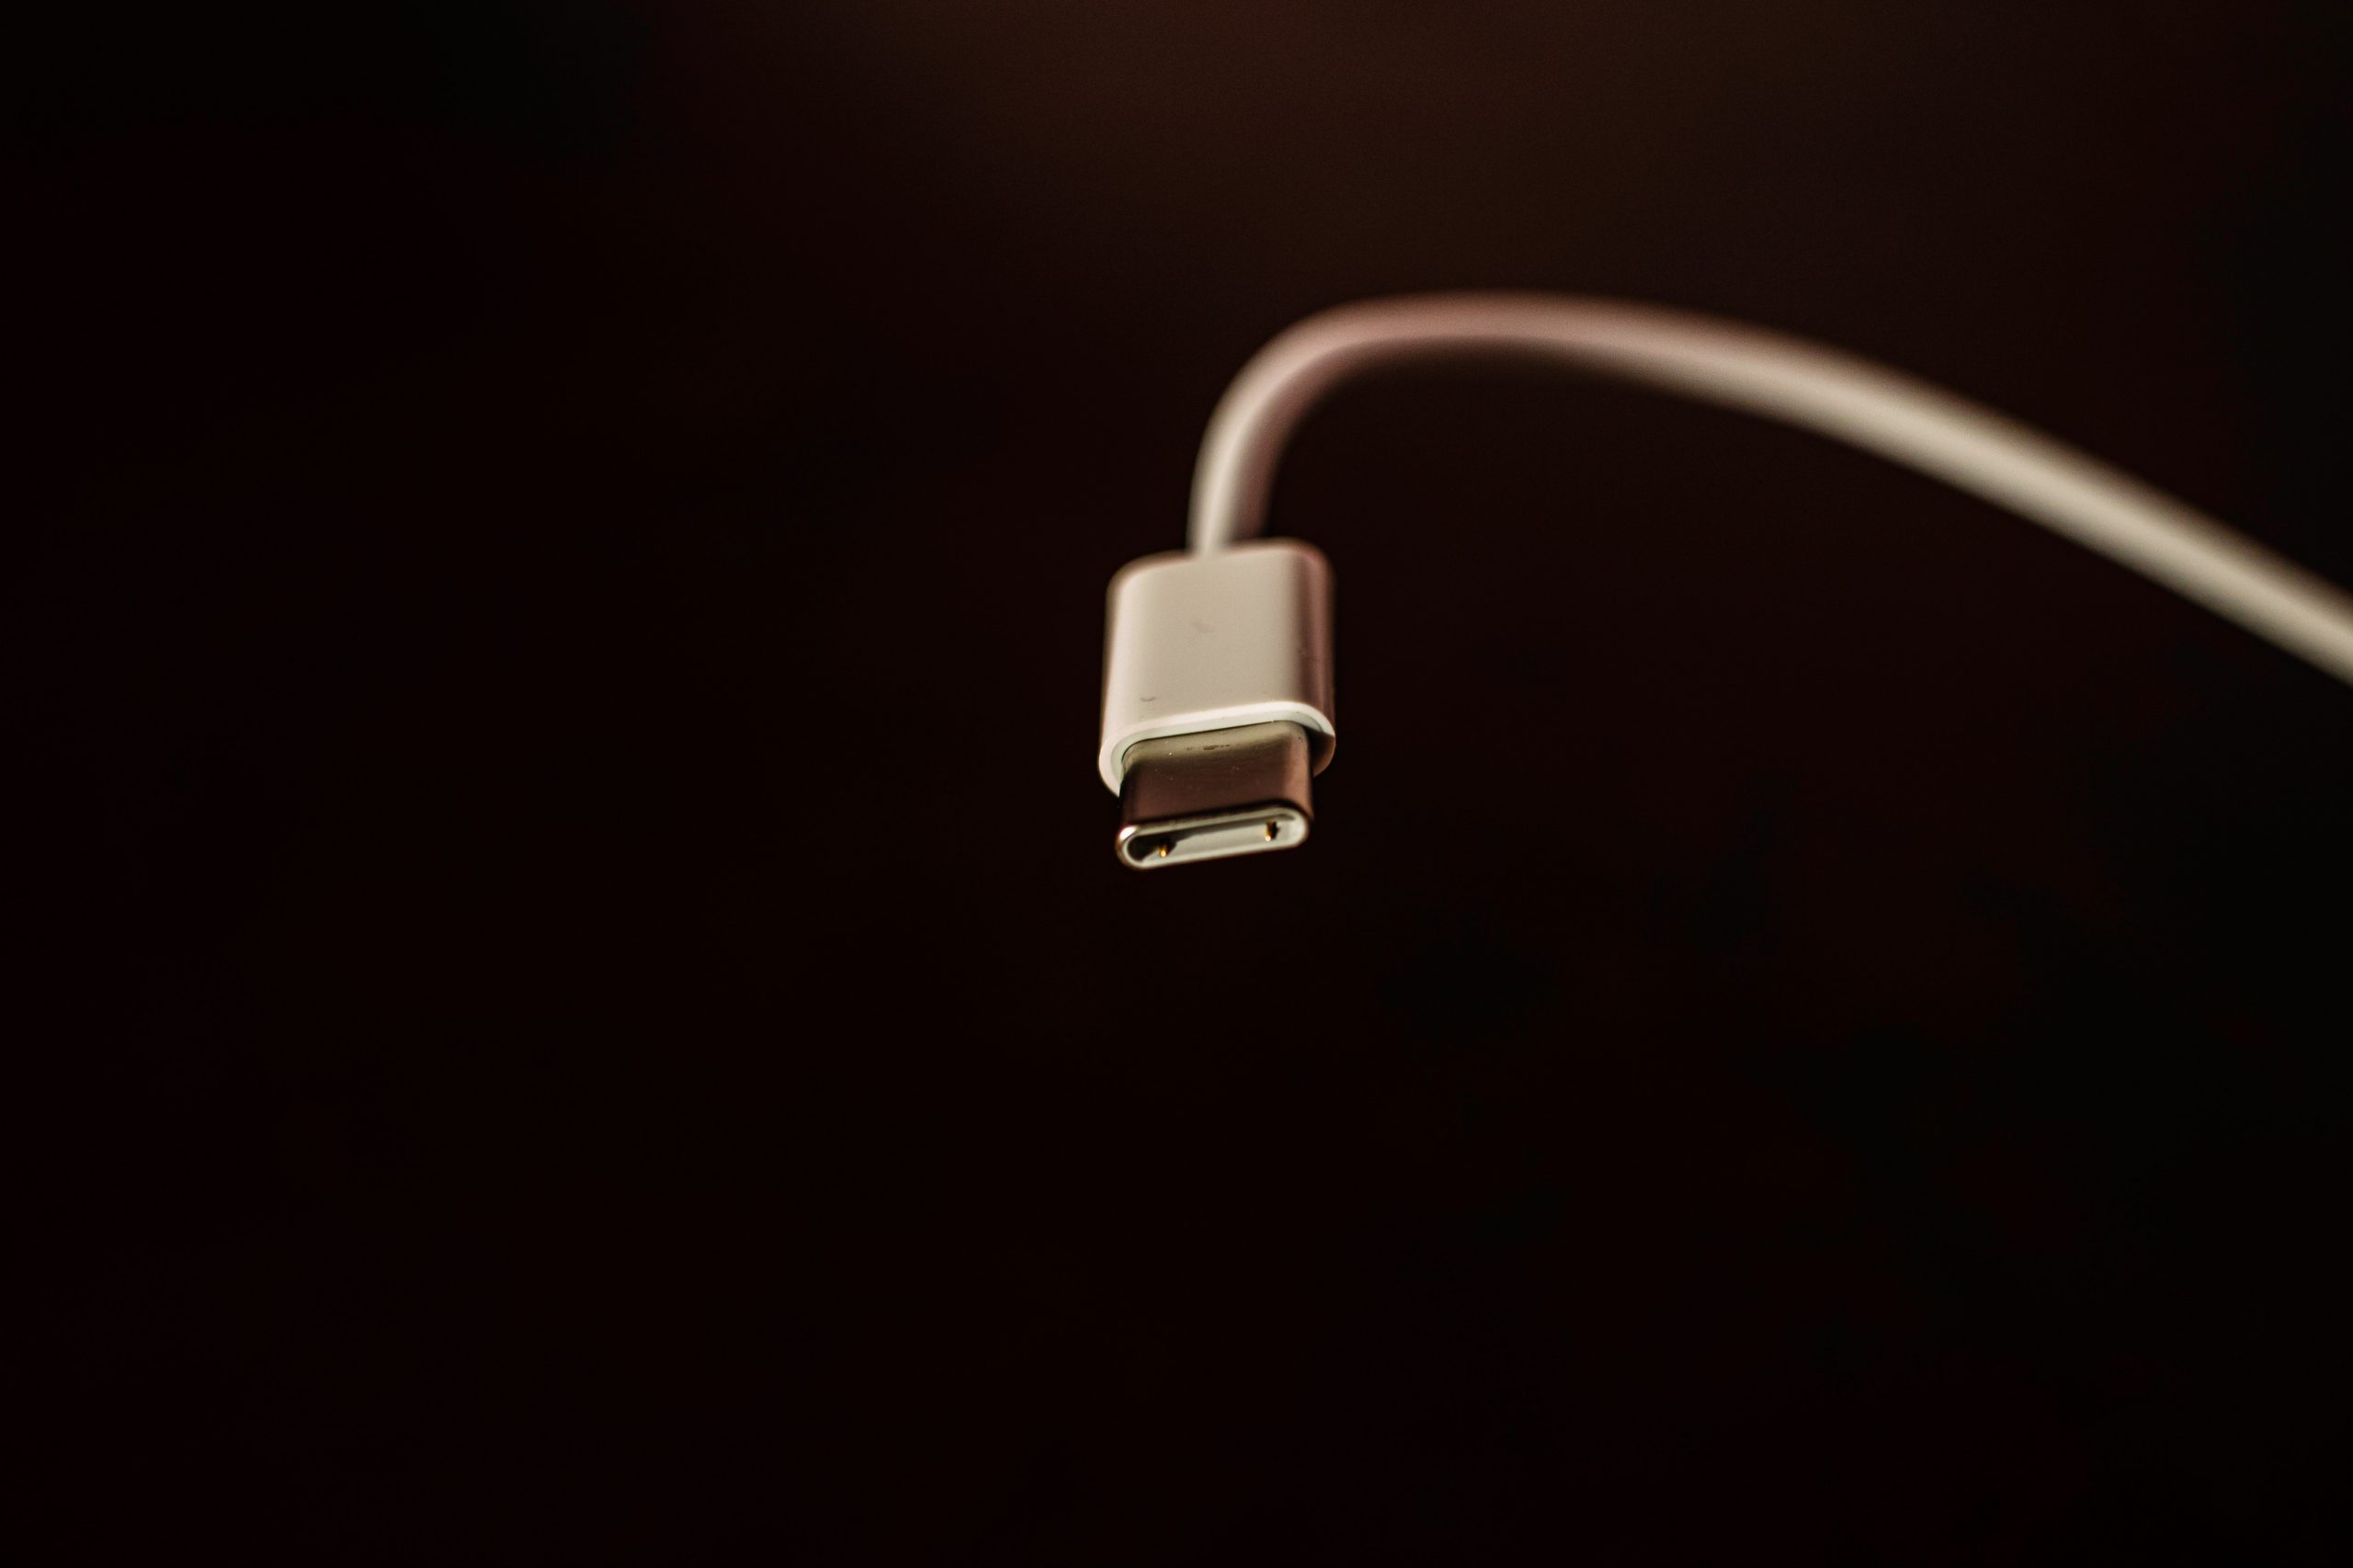 USB-C Ladekabel mit schwarzem Hintergrund, neuer Standard für Ladekabel